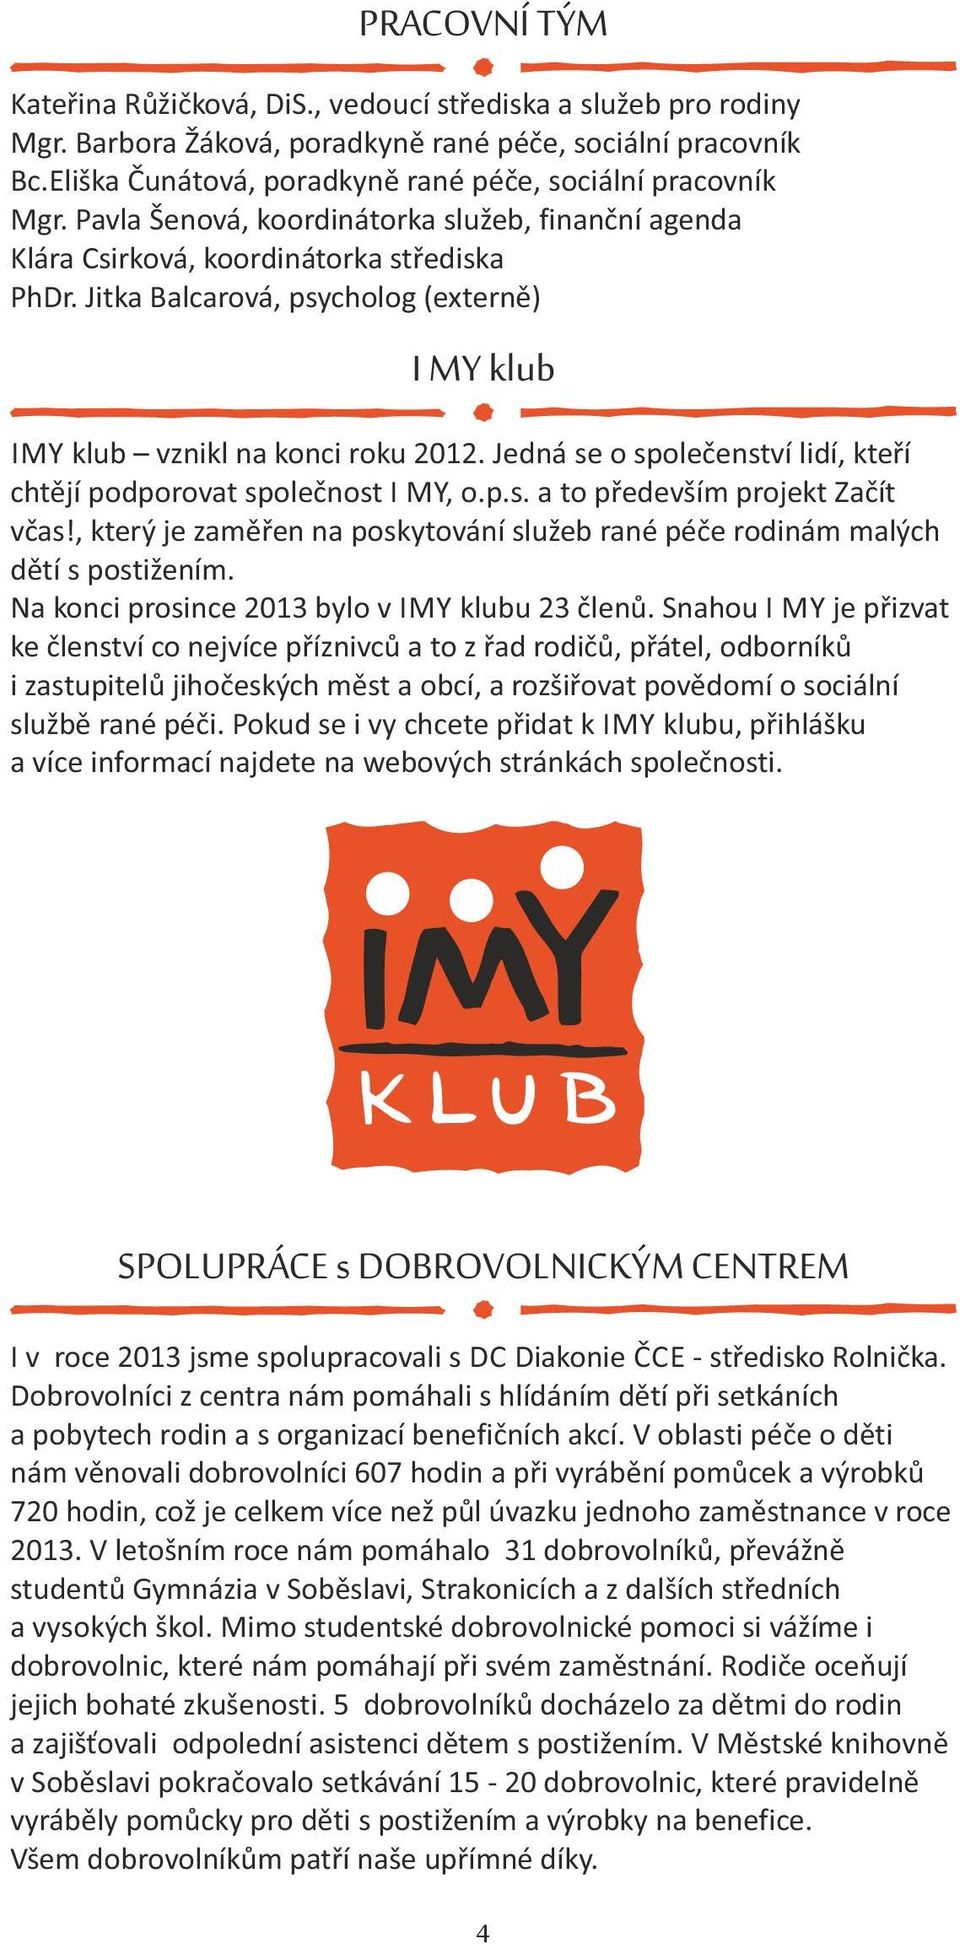 Jitka Balcarová, psycholog (externě) I MY klub IMY klub vznikl na konci roku 2012. Jedná se o společenství lidí, kteří chtějí podporovat společnost I MY, o.p.s. a to především projekt Začít včas!